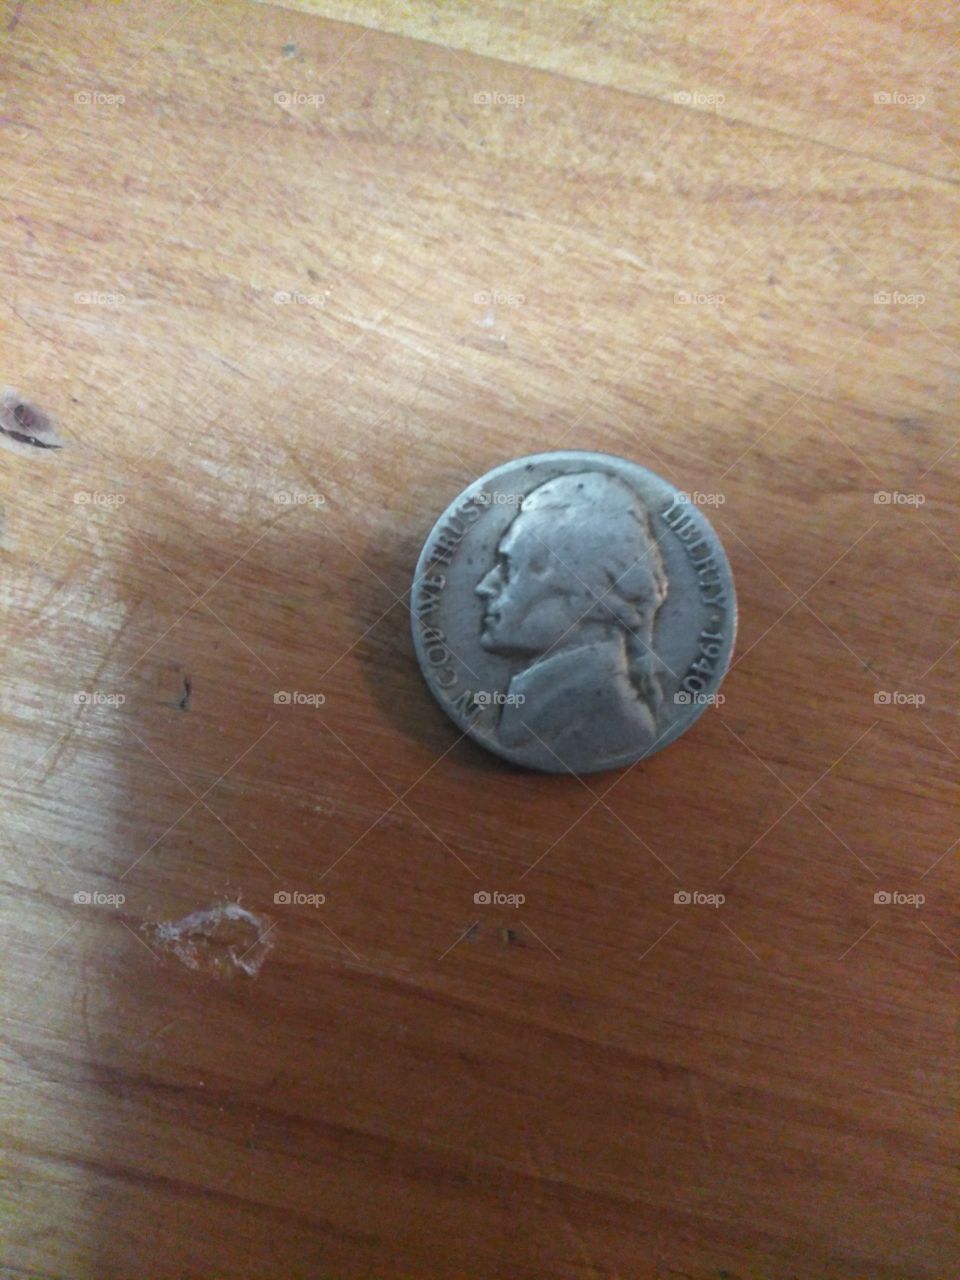 1940 nickel